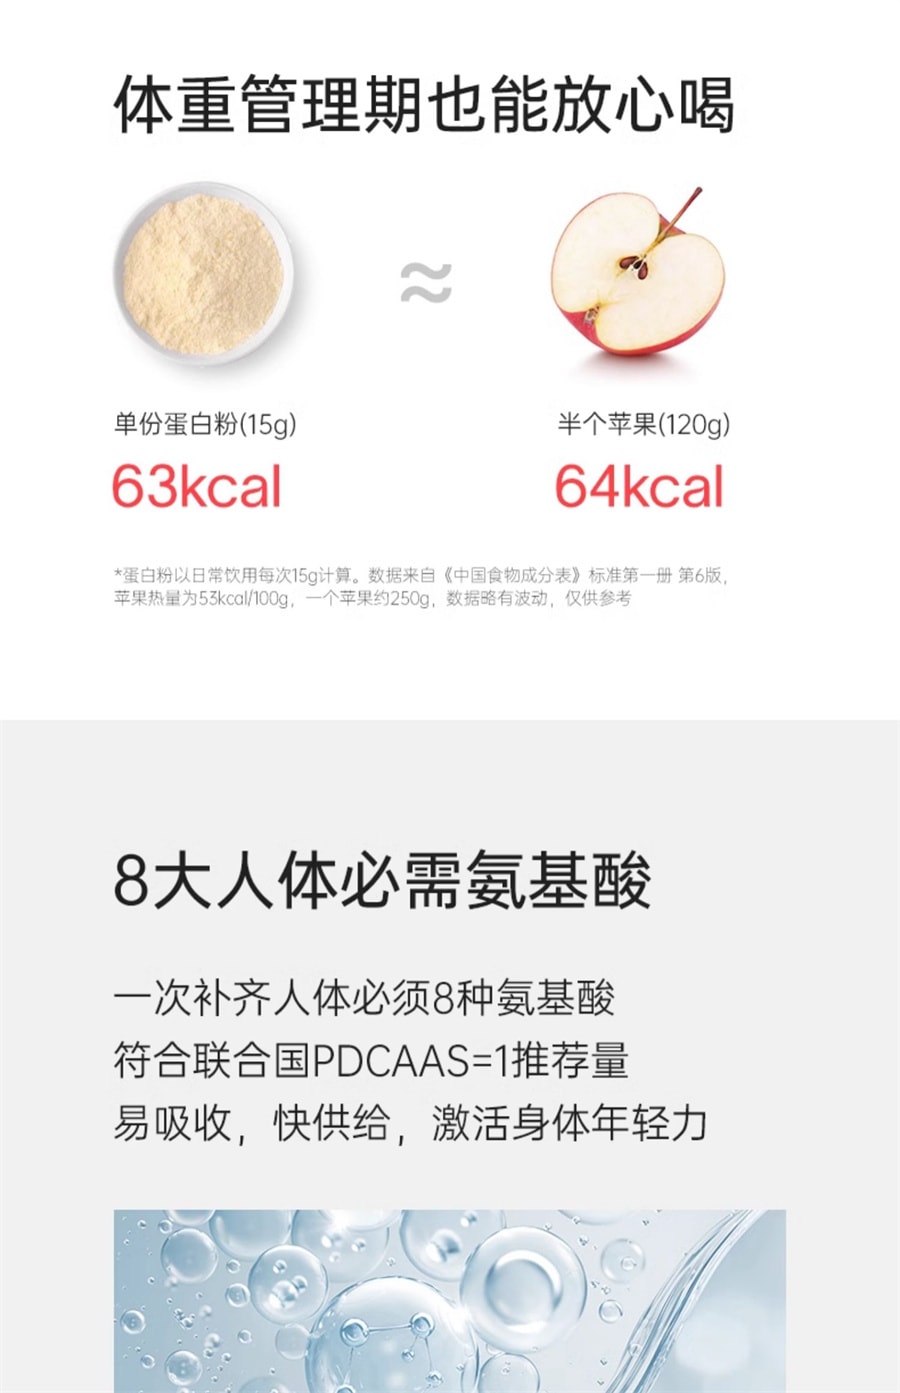 【中国直邮】fiboo  乳清蛋白粉浓缩蛋白质粉女性运动健身营养粉  455g生打椰椰味